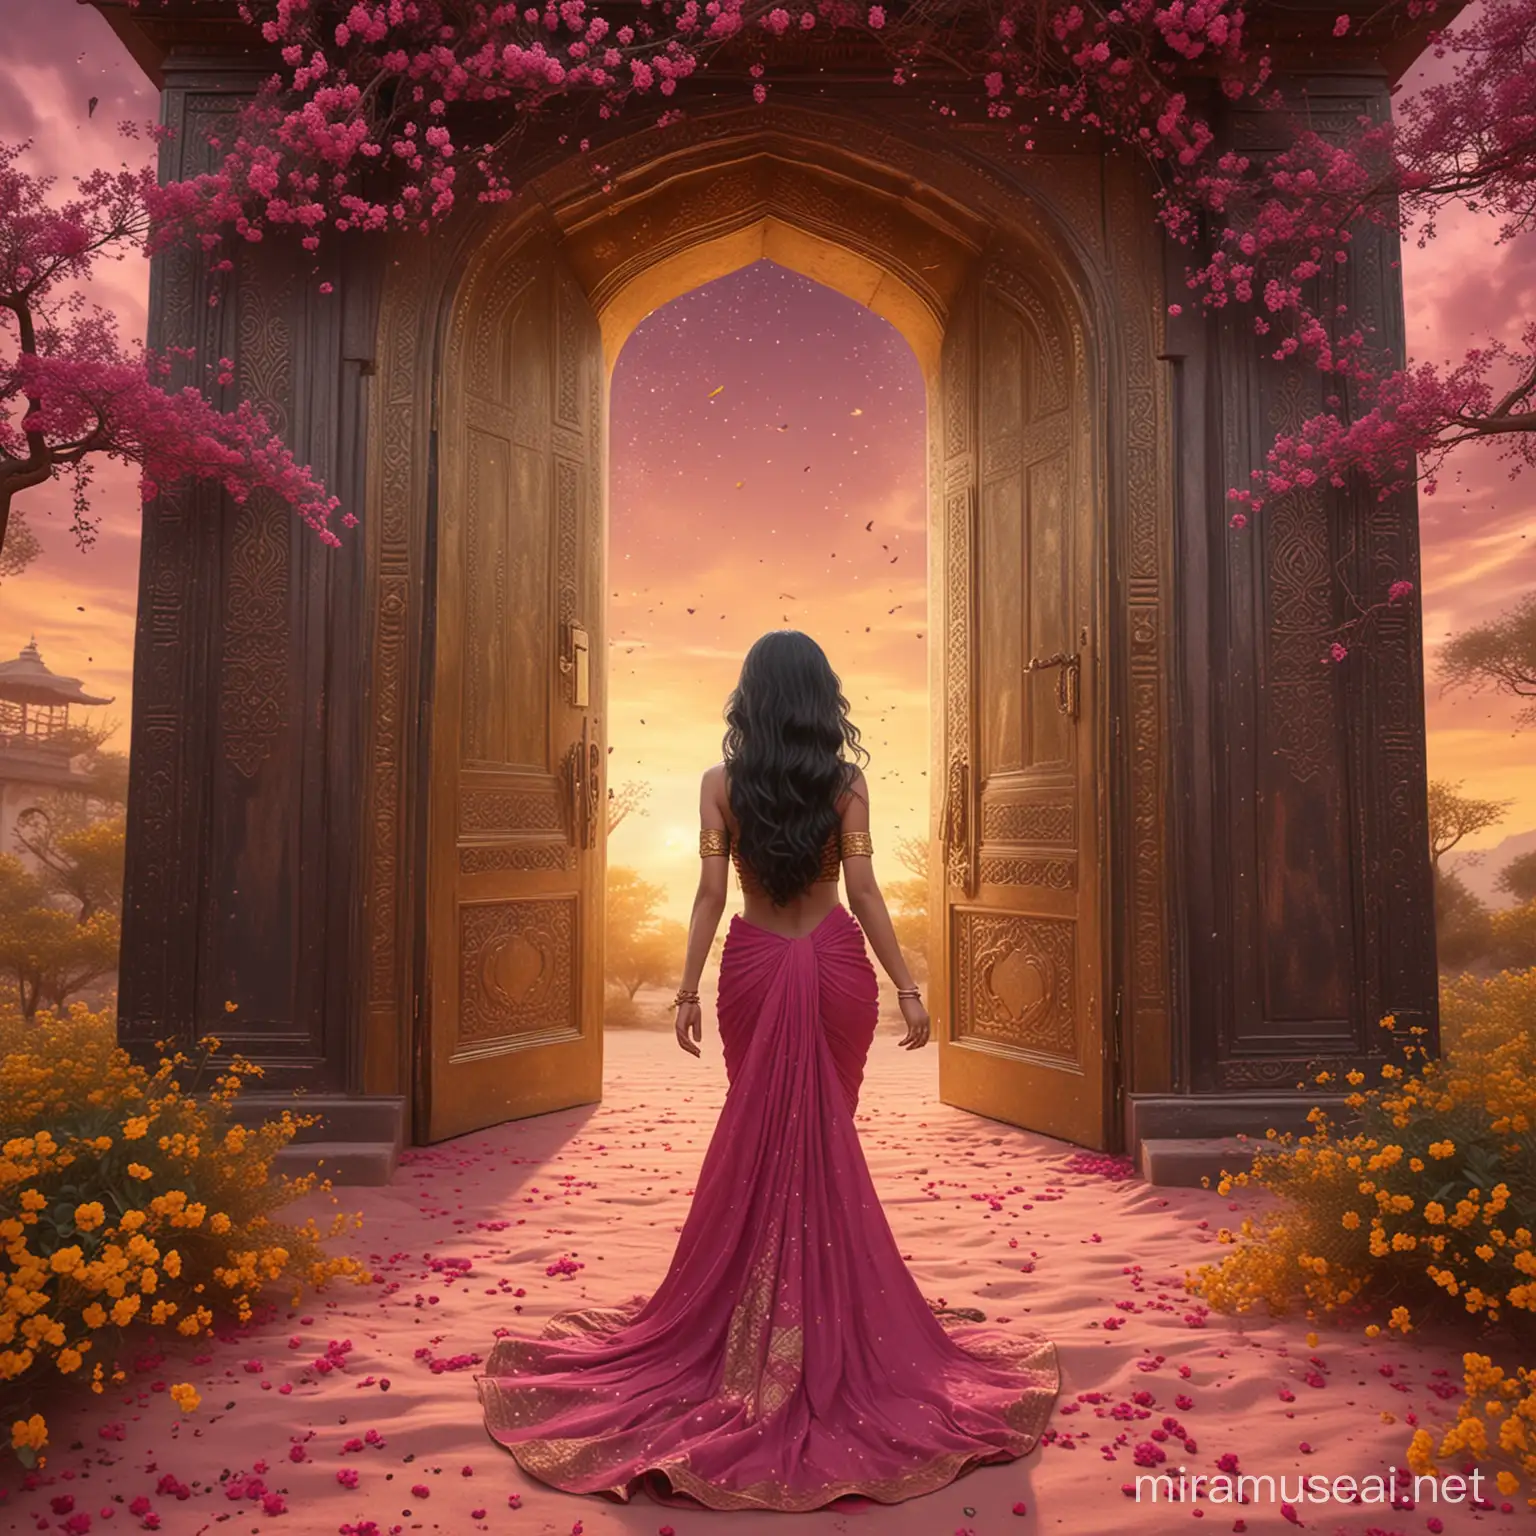 Elegant Woman Walking to Golden Arabian Door Amidst Dark Yellow Flowers and Pink Dust